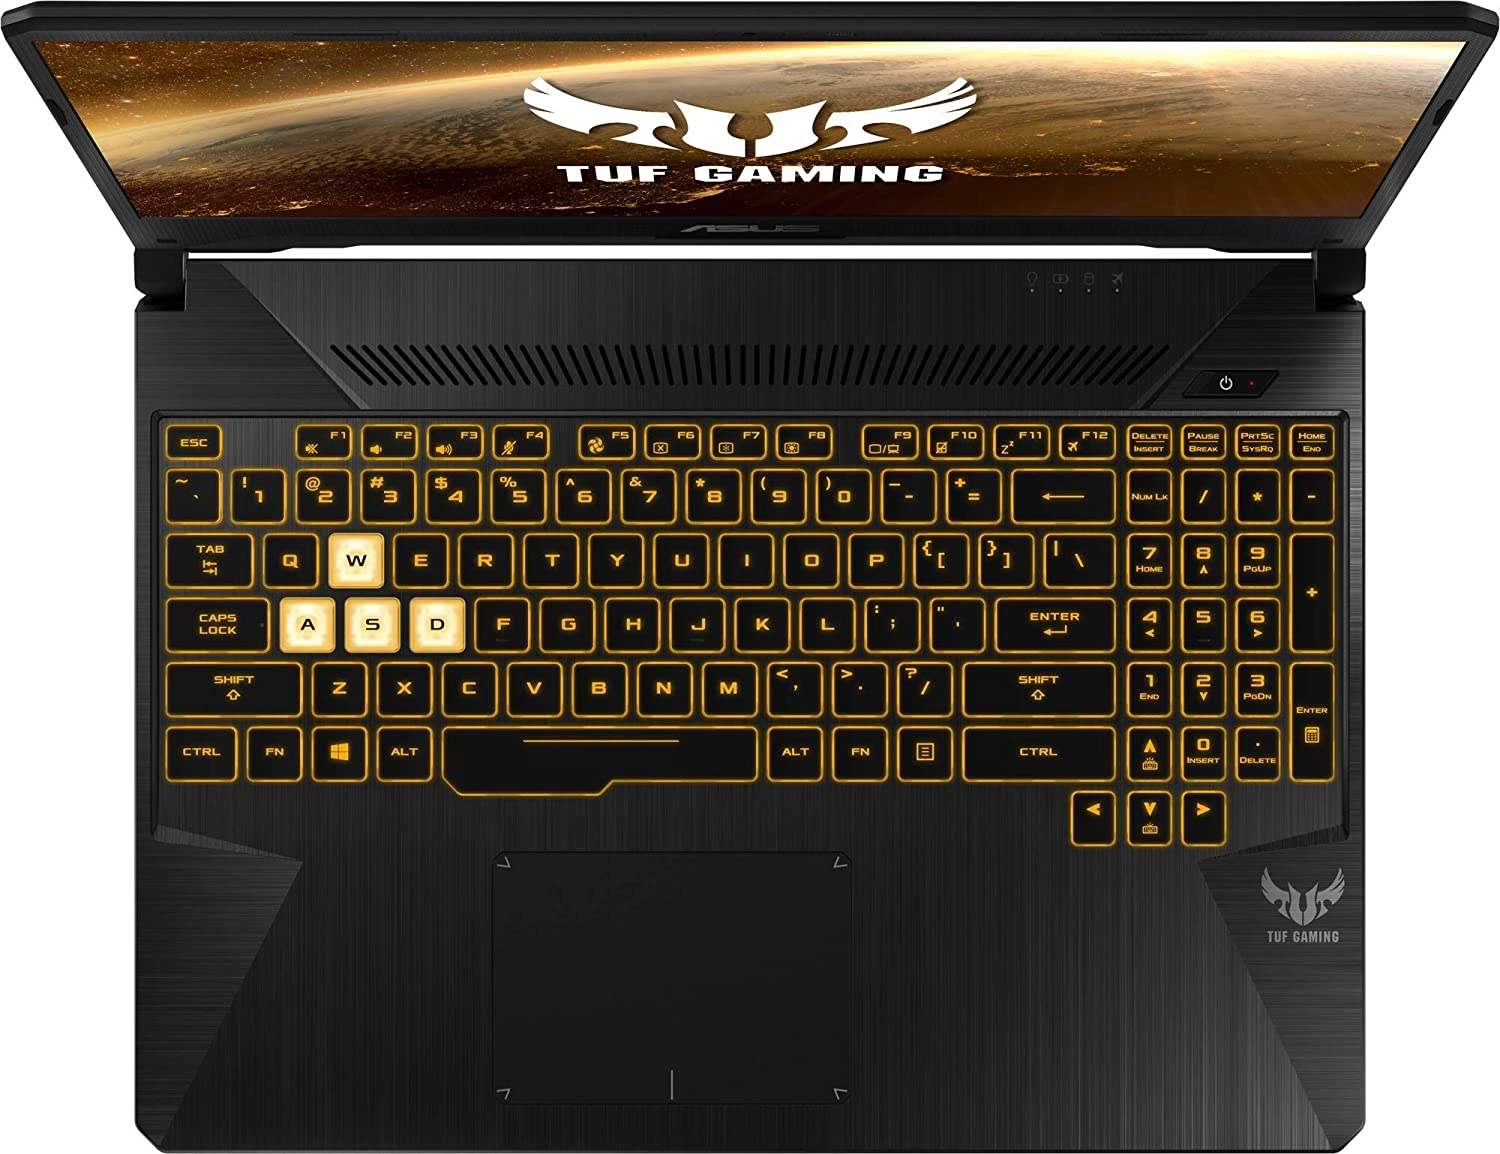 Asus TUF Gaming FX505DT-BQ180 laptop image